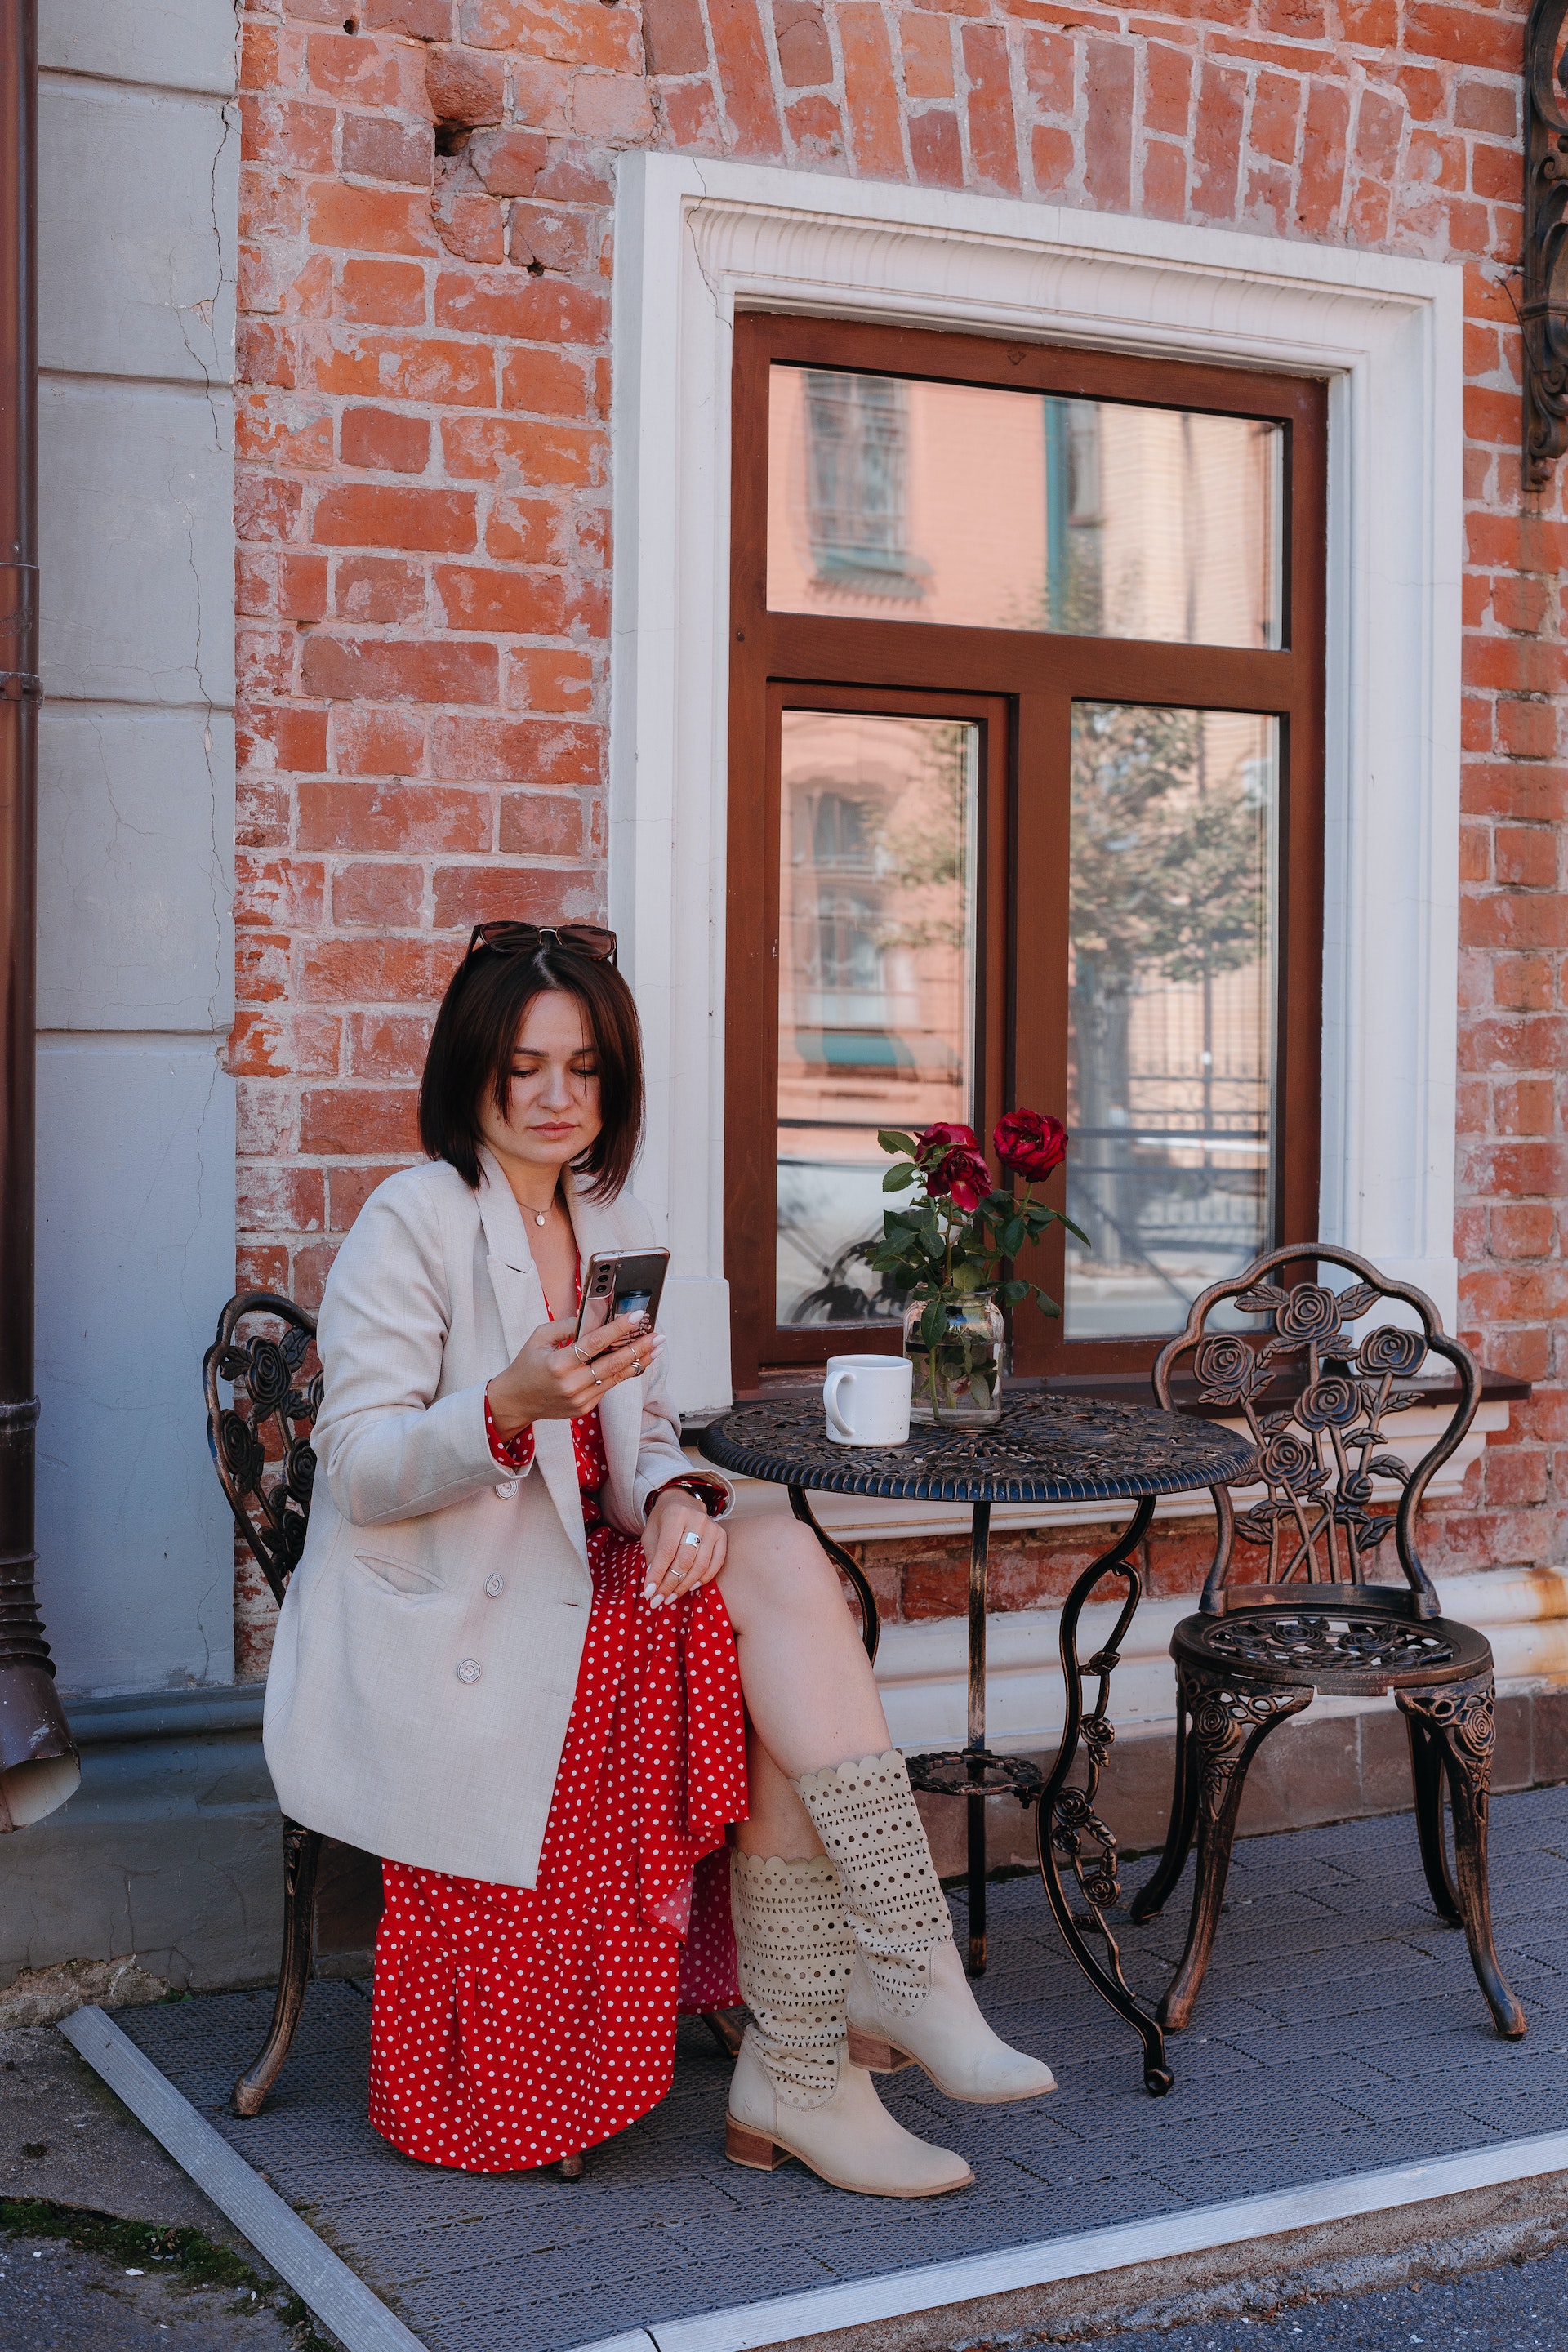 Eine Frau, die in einem Straßencafé sitzt und ihr Handy überprüft | Quelle: Pexels